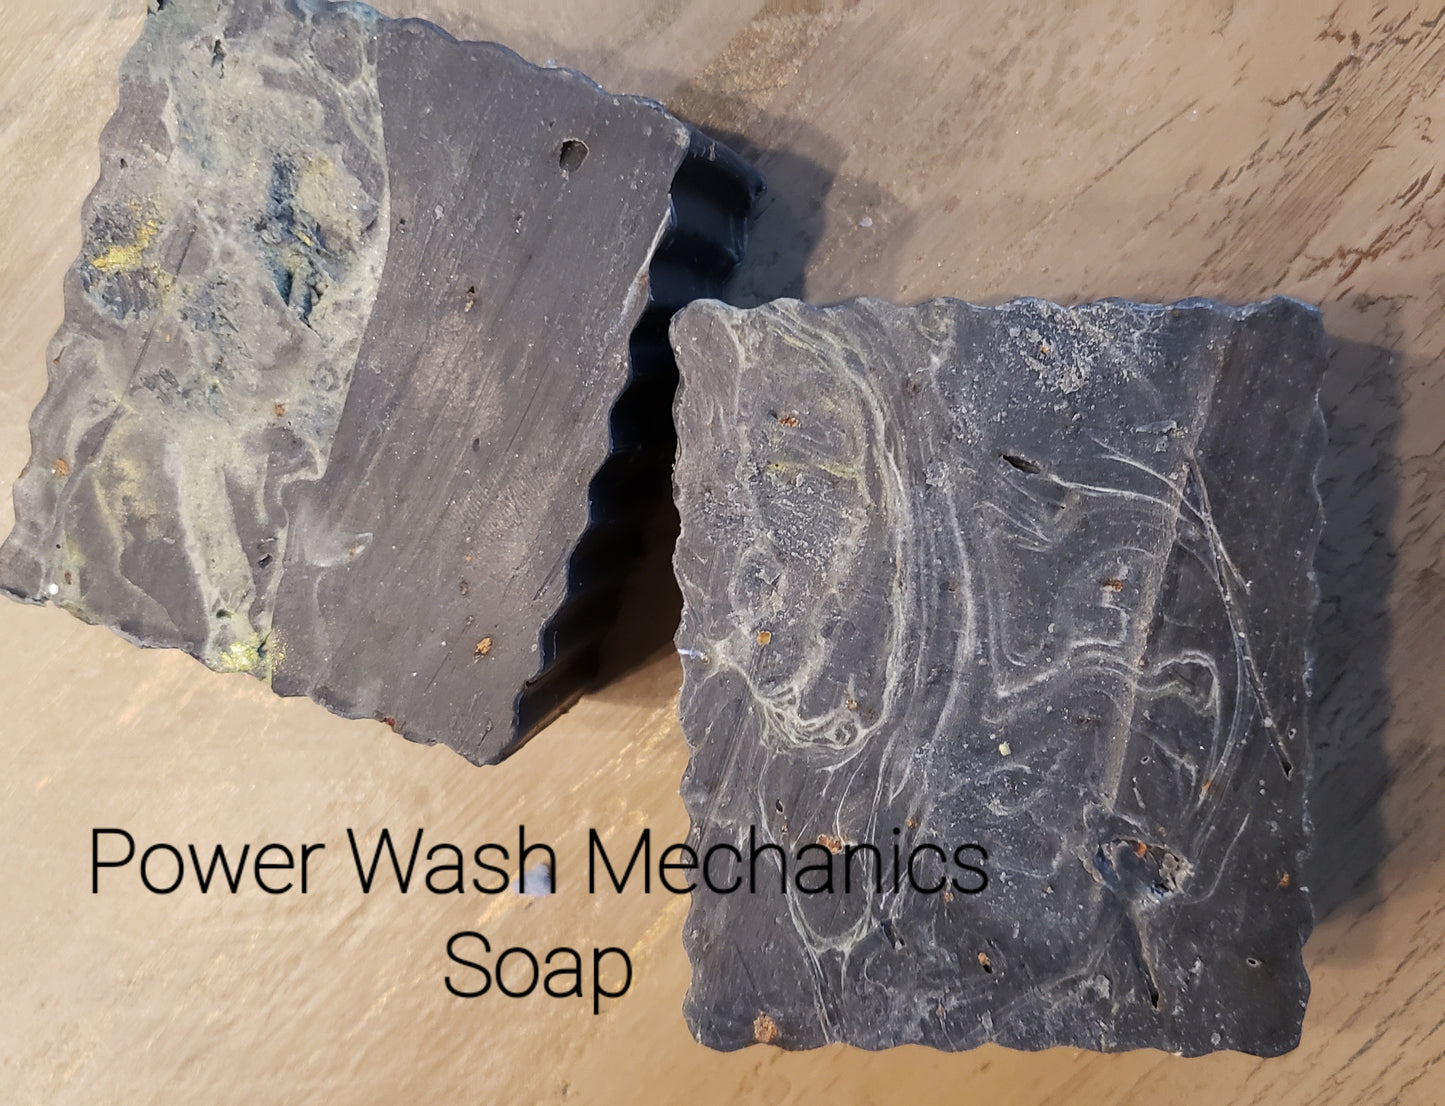 Power Wash Mechanics' Soap